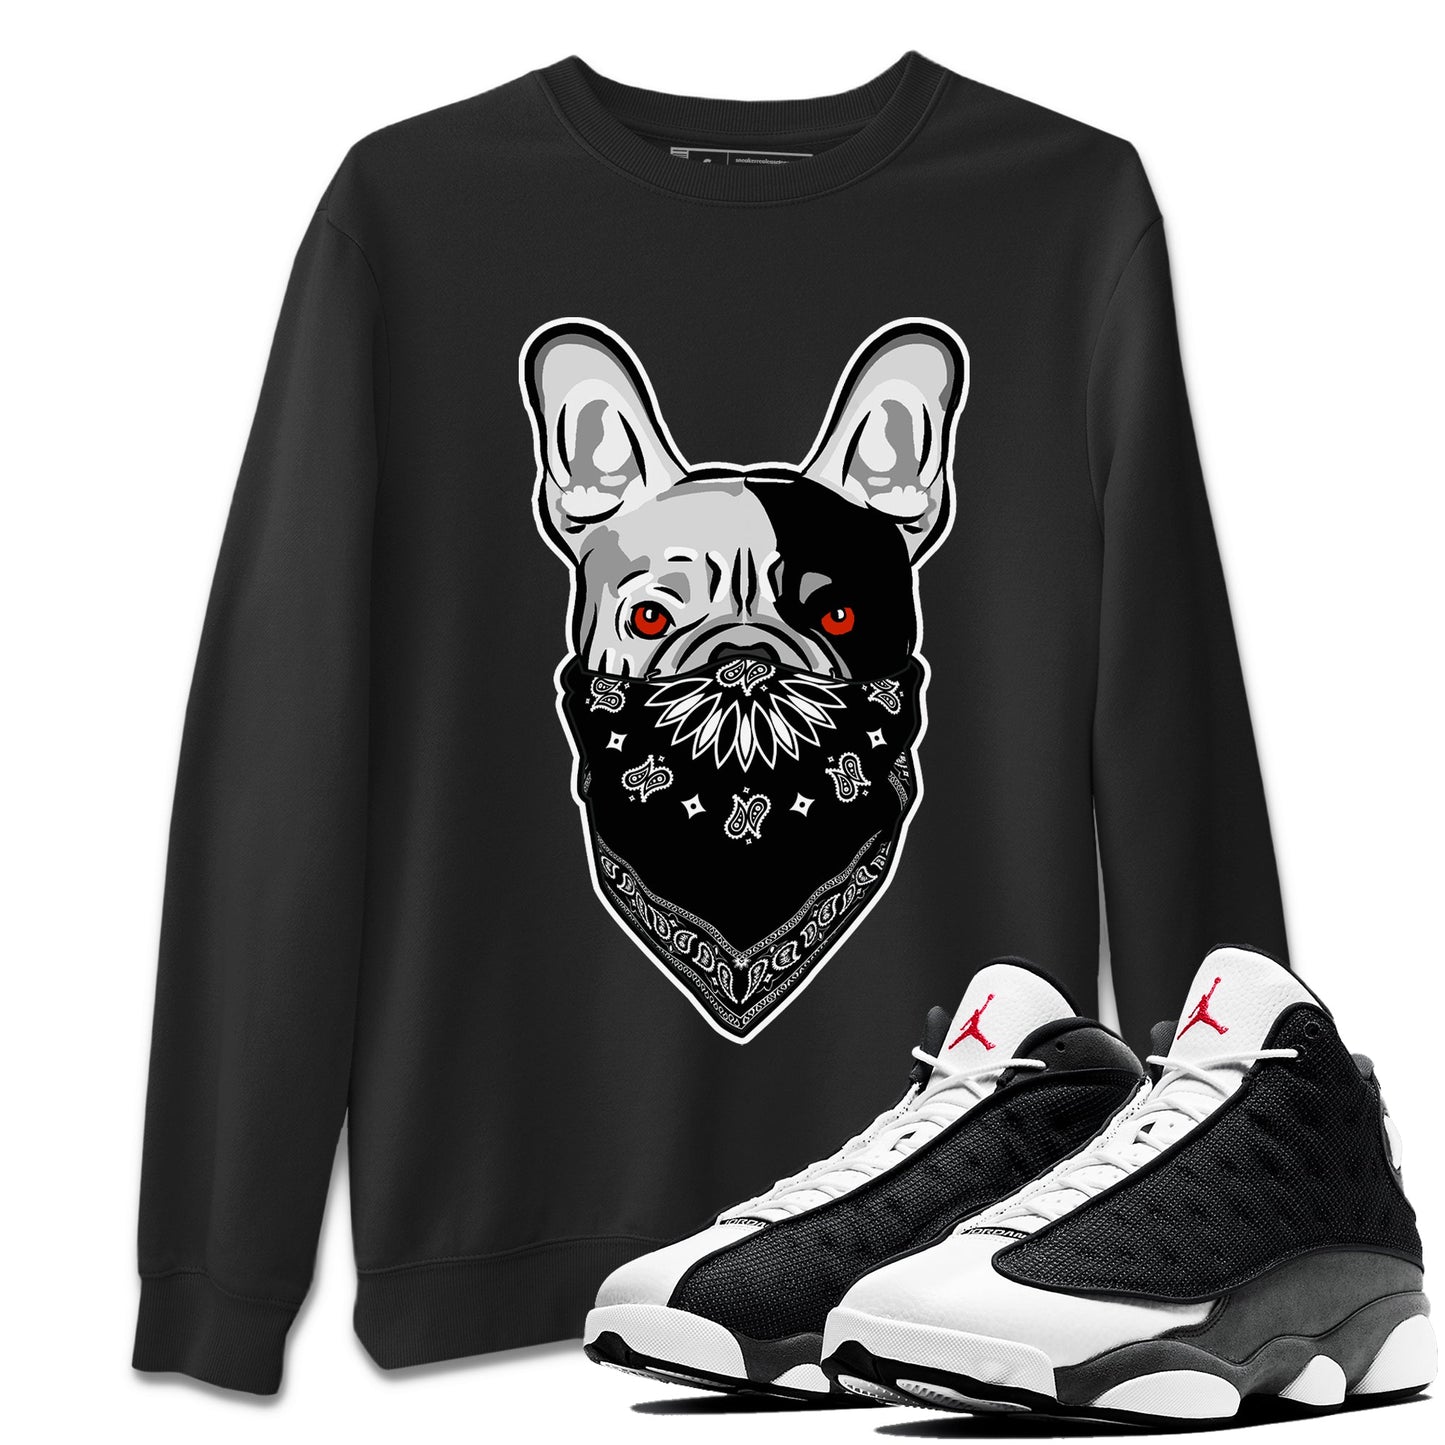 Air Jordan 13 Black Flint Sneaker Match Tees French Bulldog Bandana Streetwear Sneaker Shirt Air Jordan 13 Retro Black Flint Tee Unisex Shirts Black 1